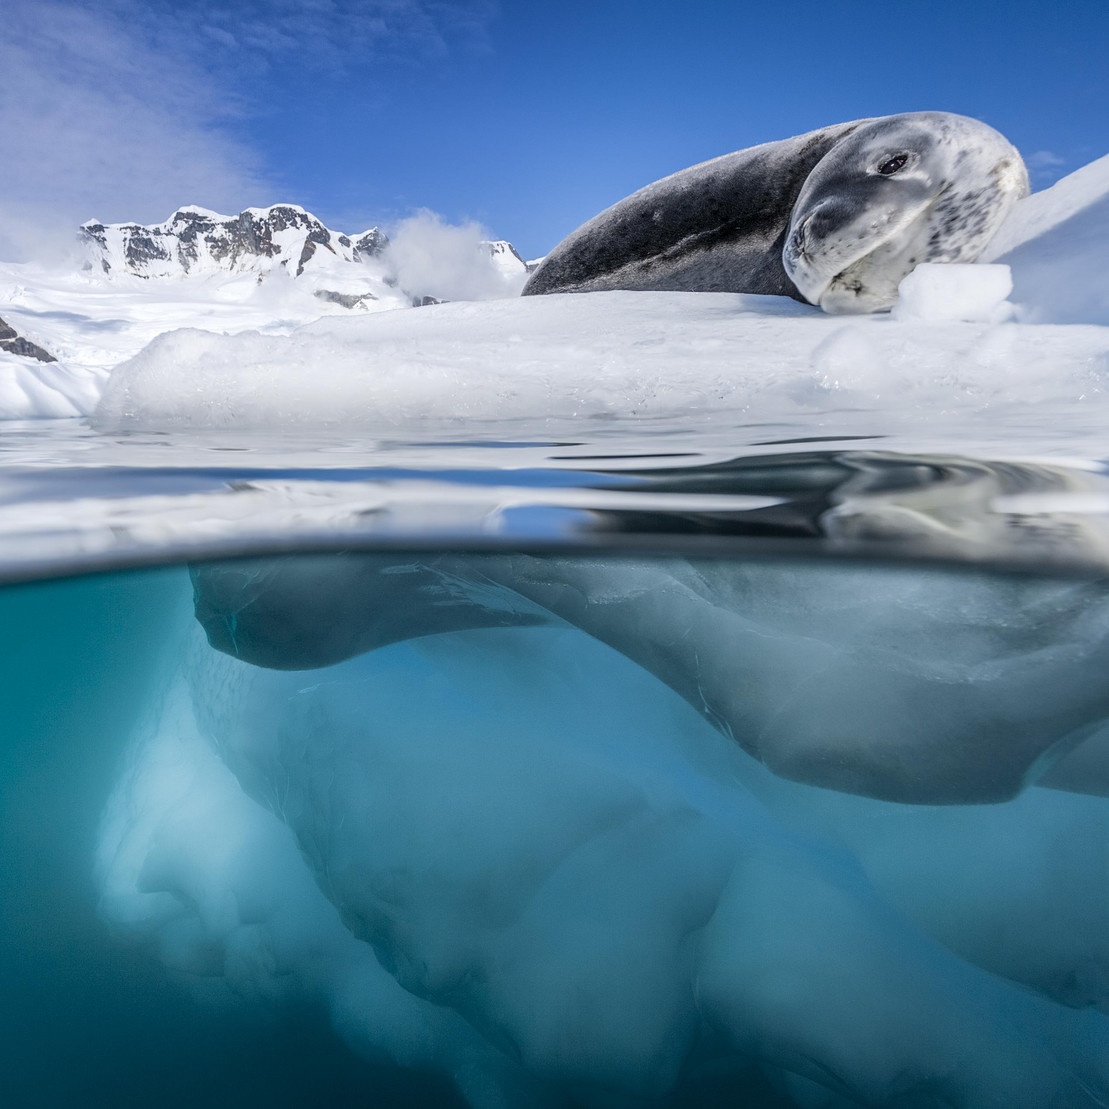 Ein Seeleopard liegt auf einer Eisscholle.